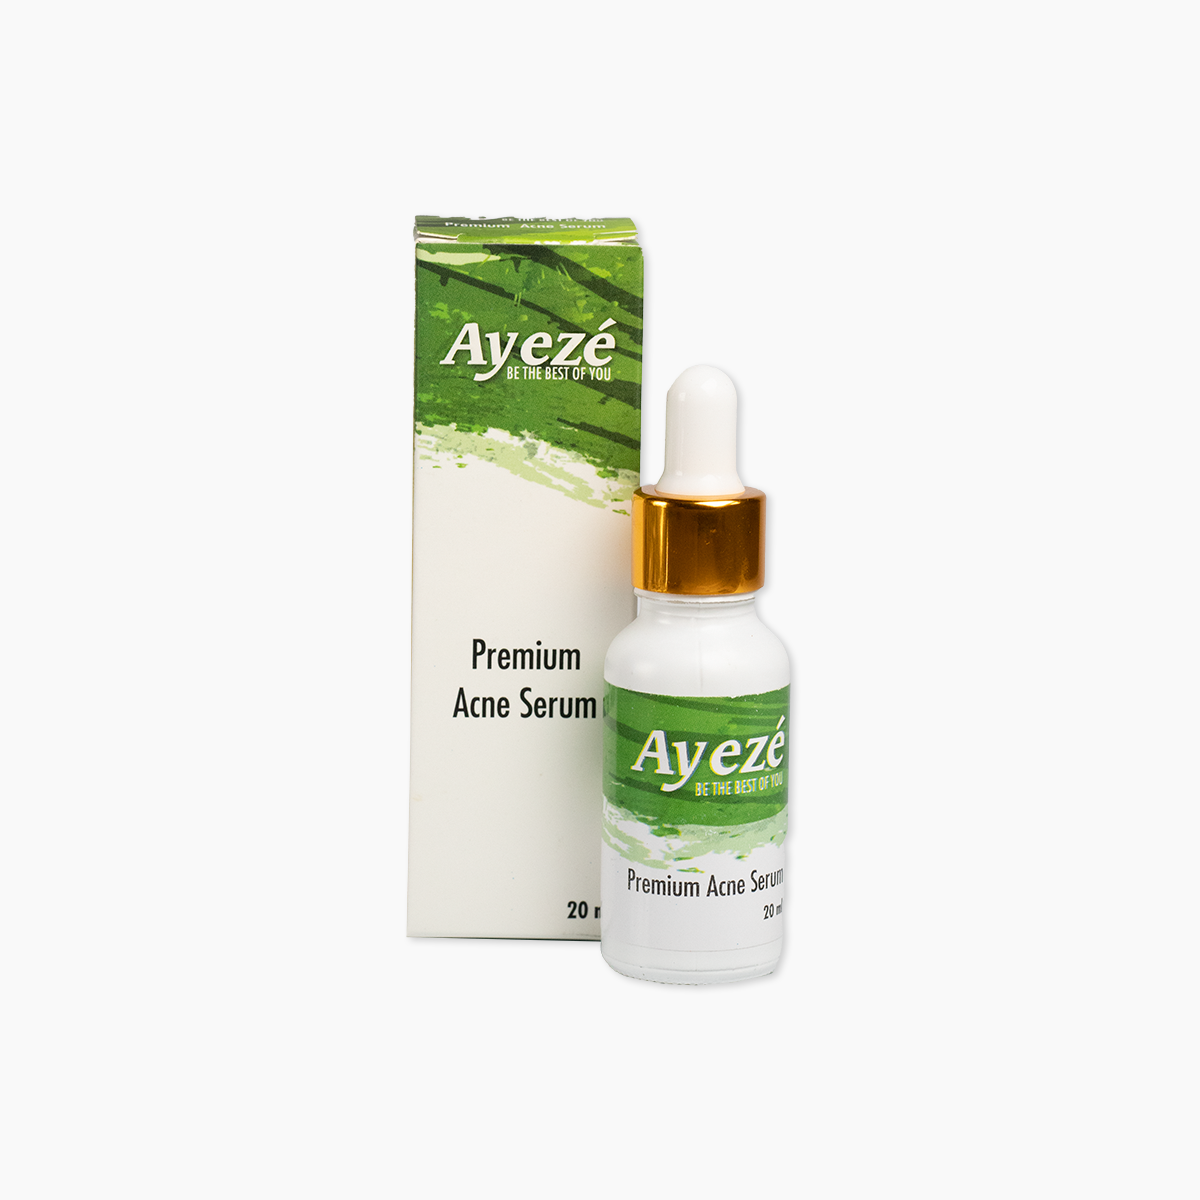 Premium Anti-Acne Serum